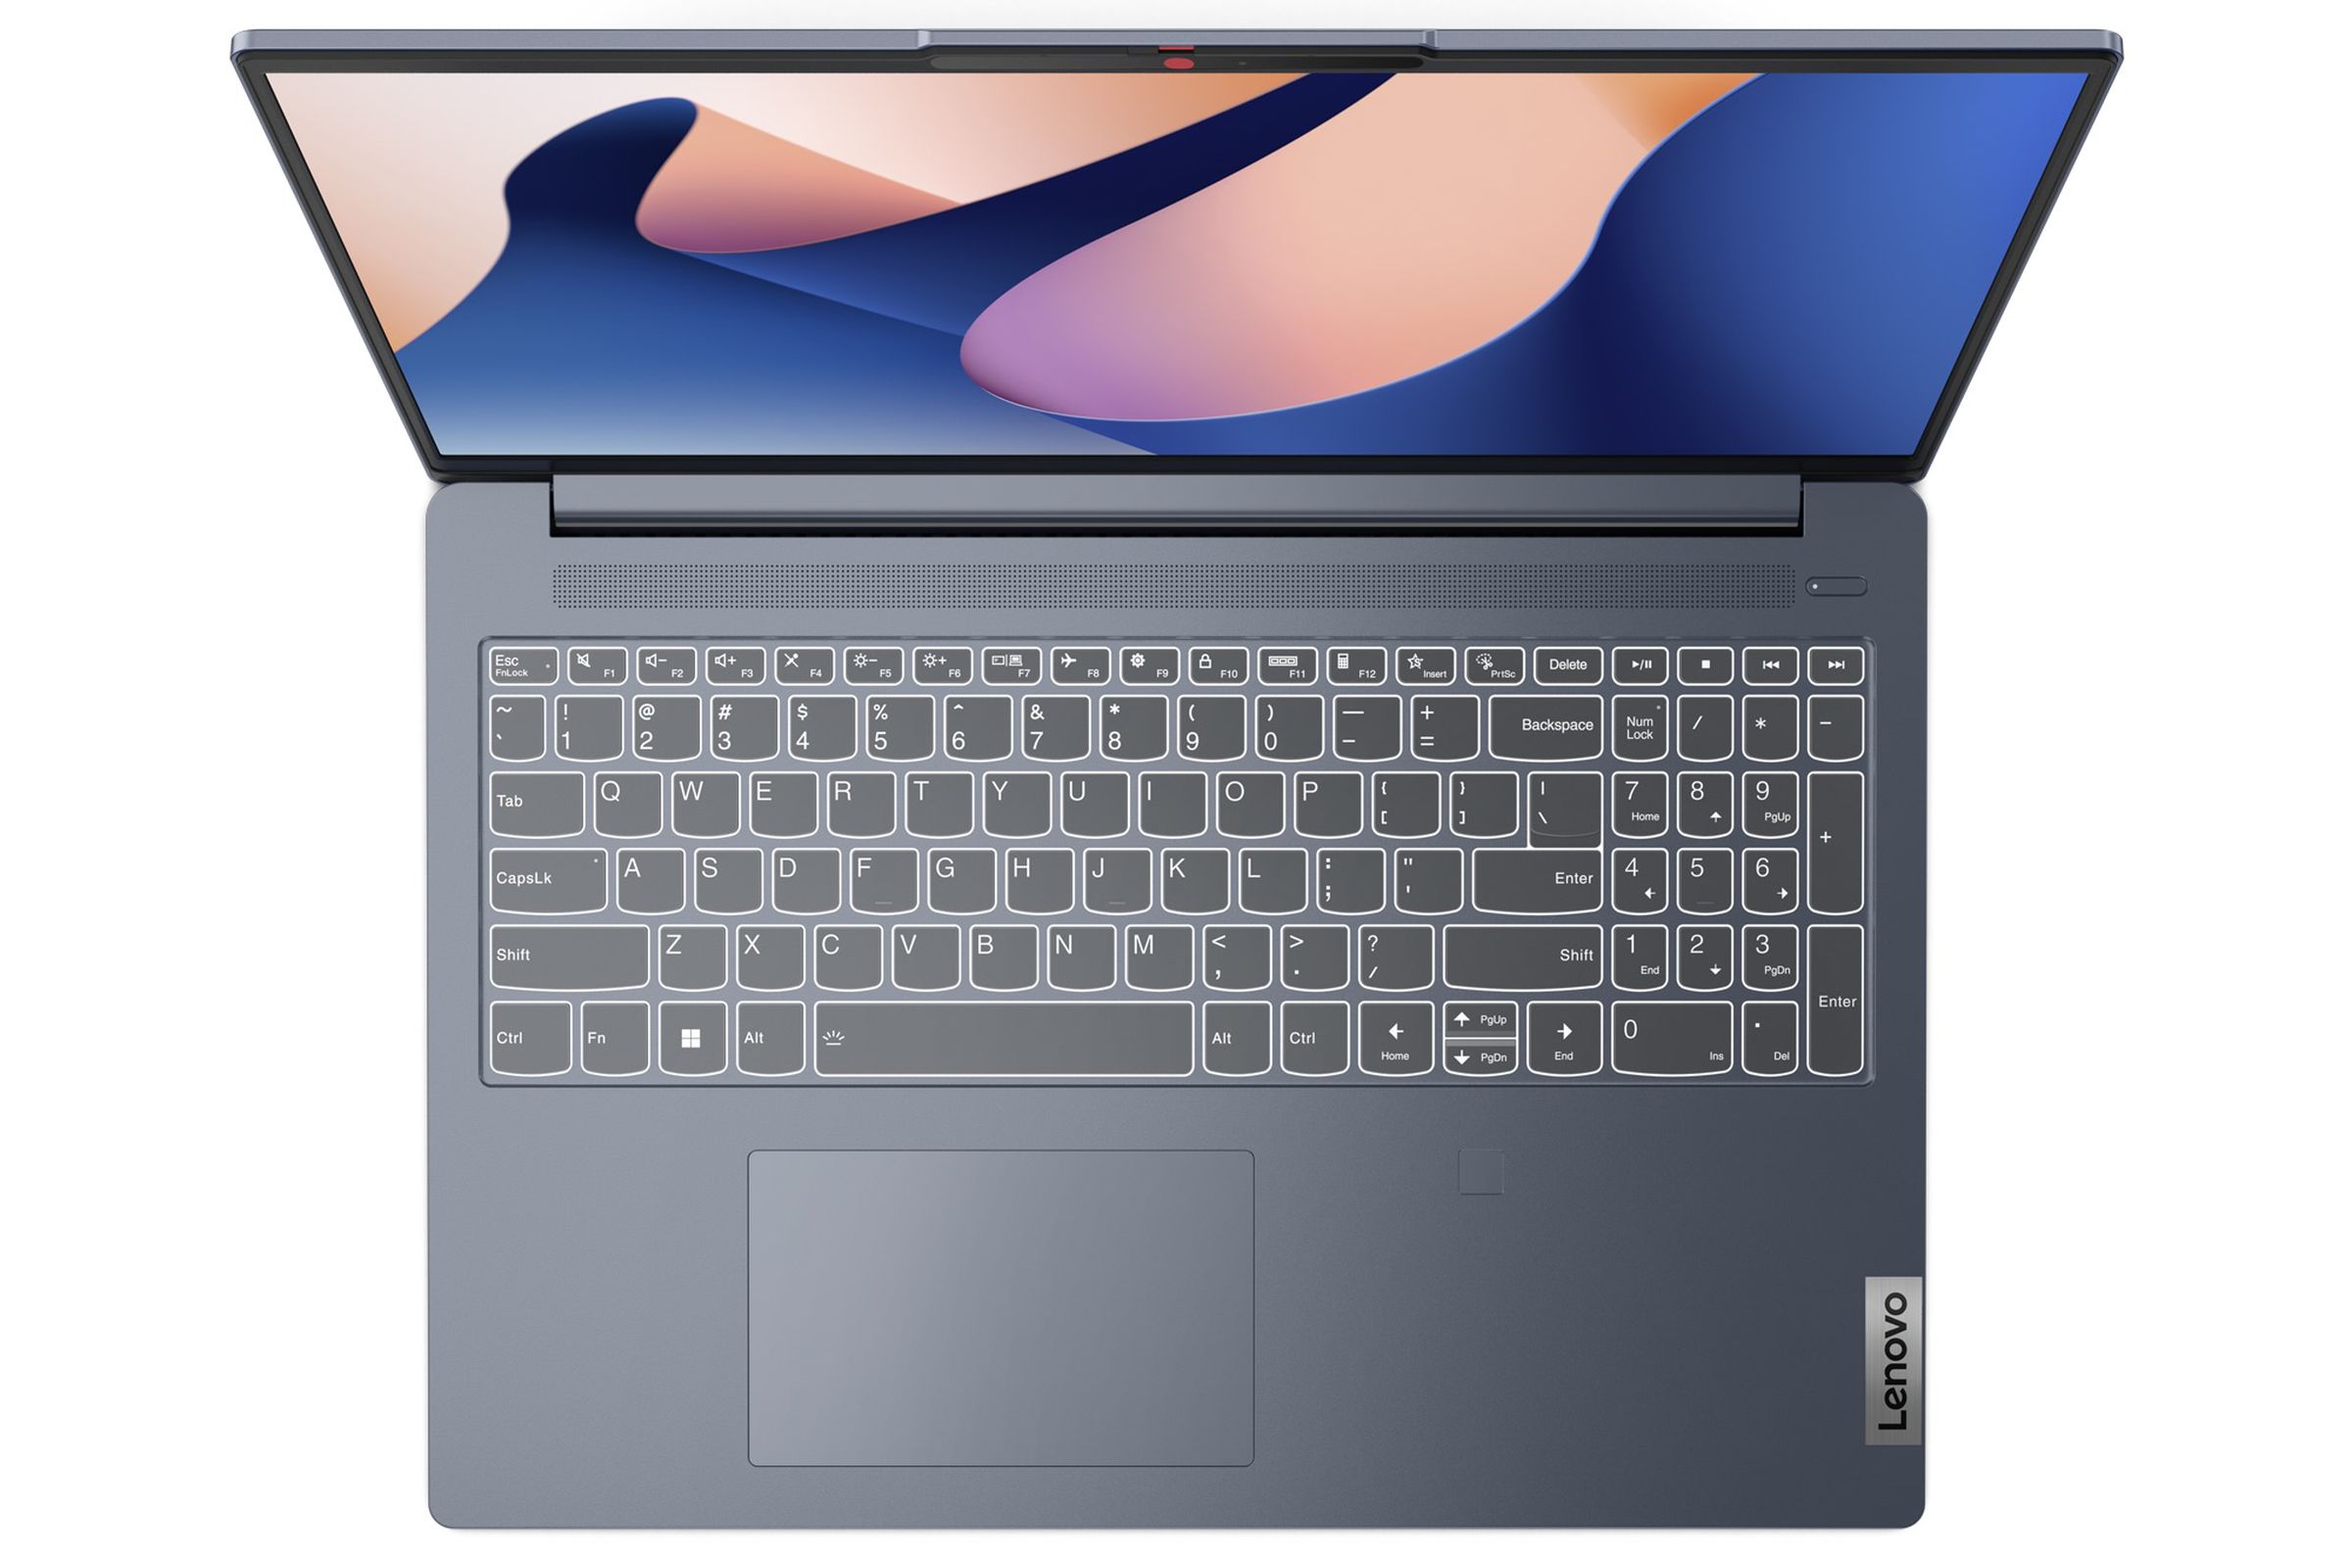 Tổng hợp những dòng laptop có màn hình đẹp chuẩn màu để chỉnh sửa ảnh |  Aphoto